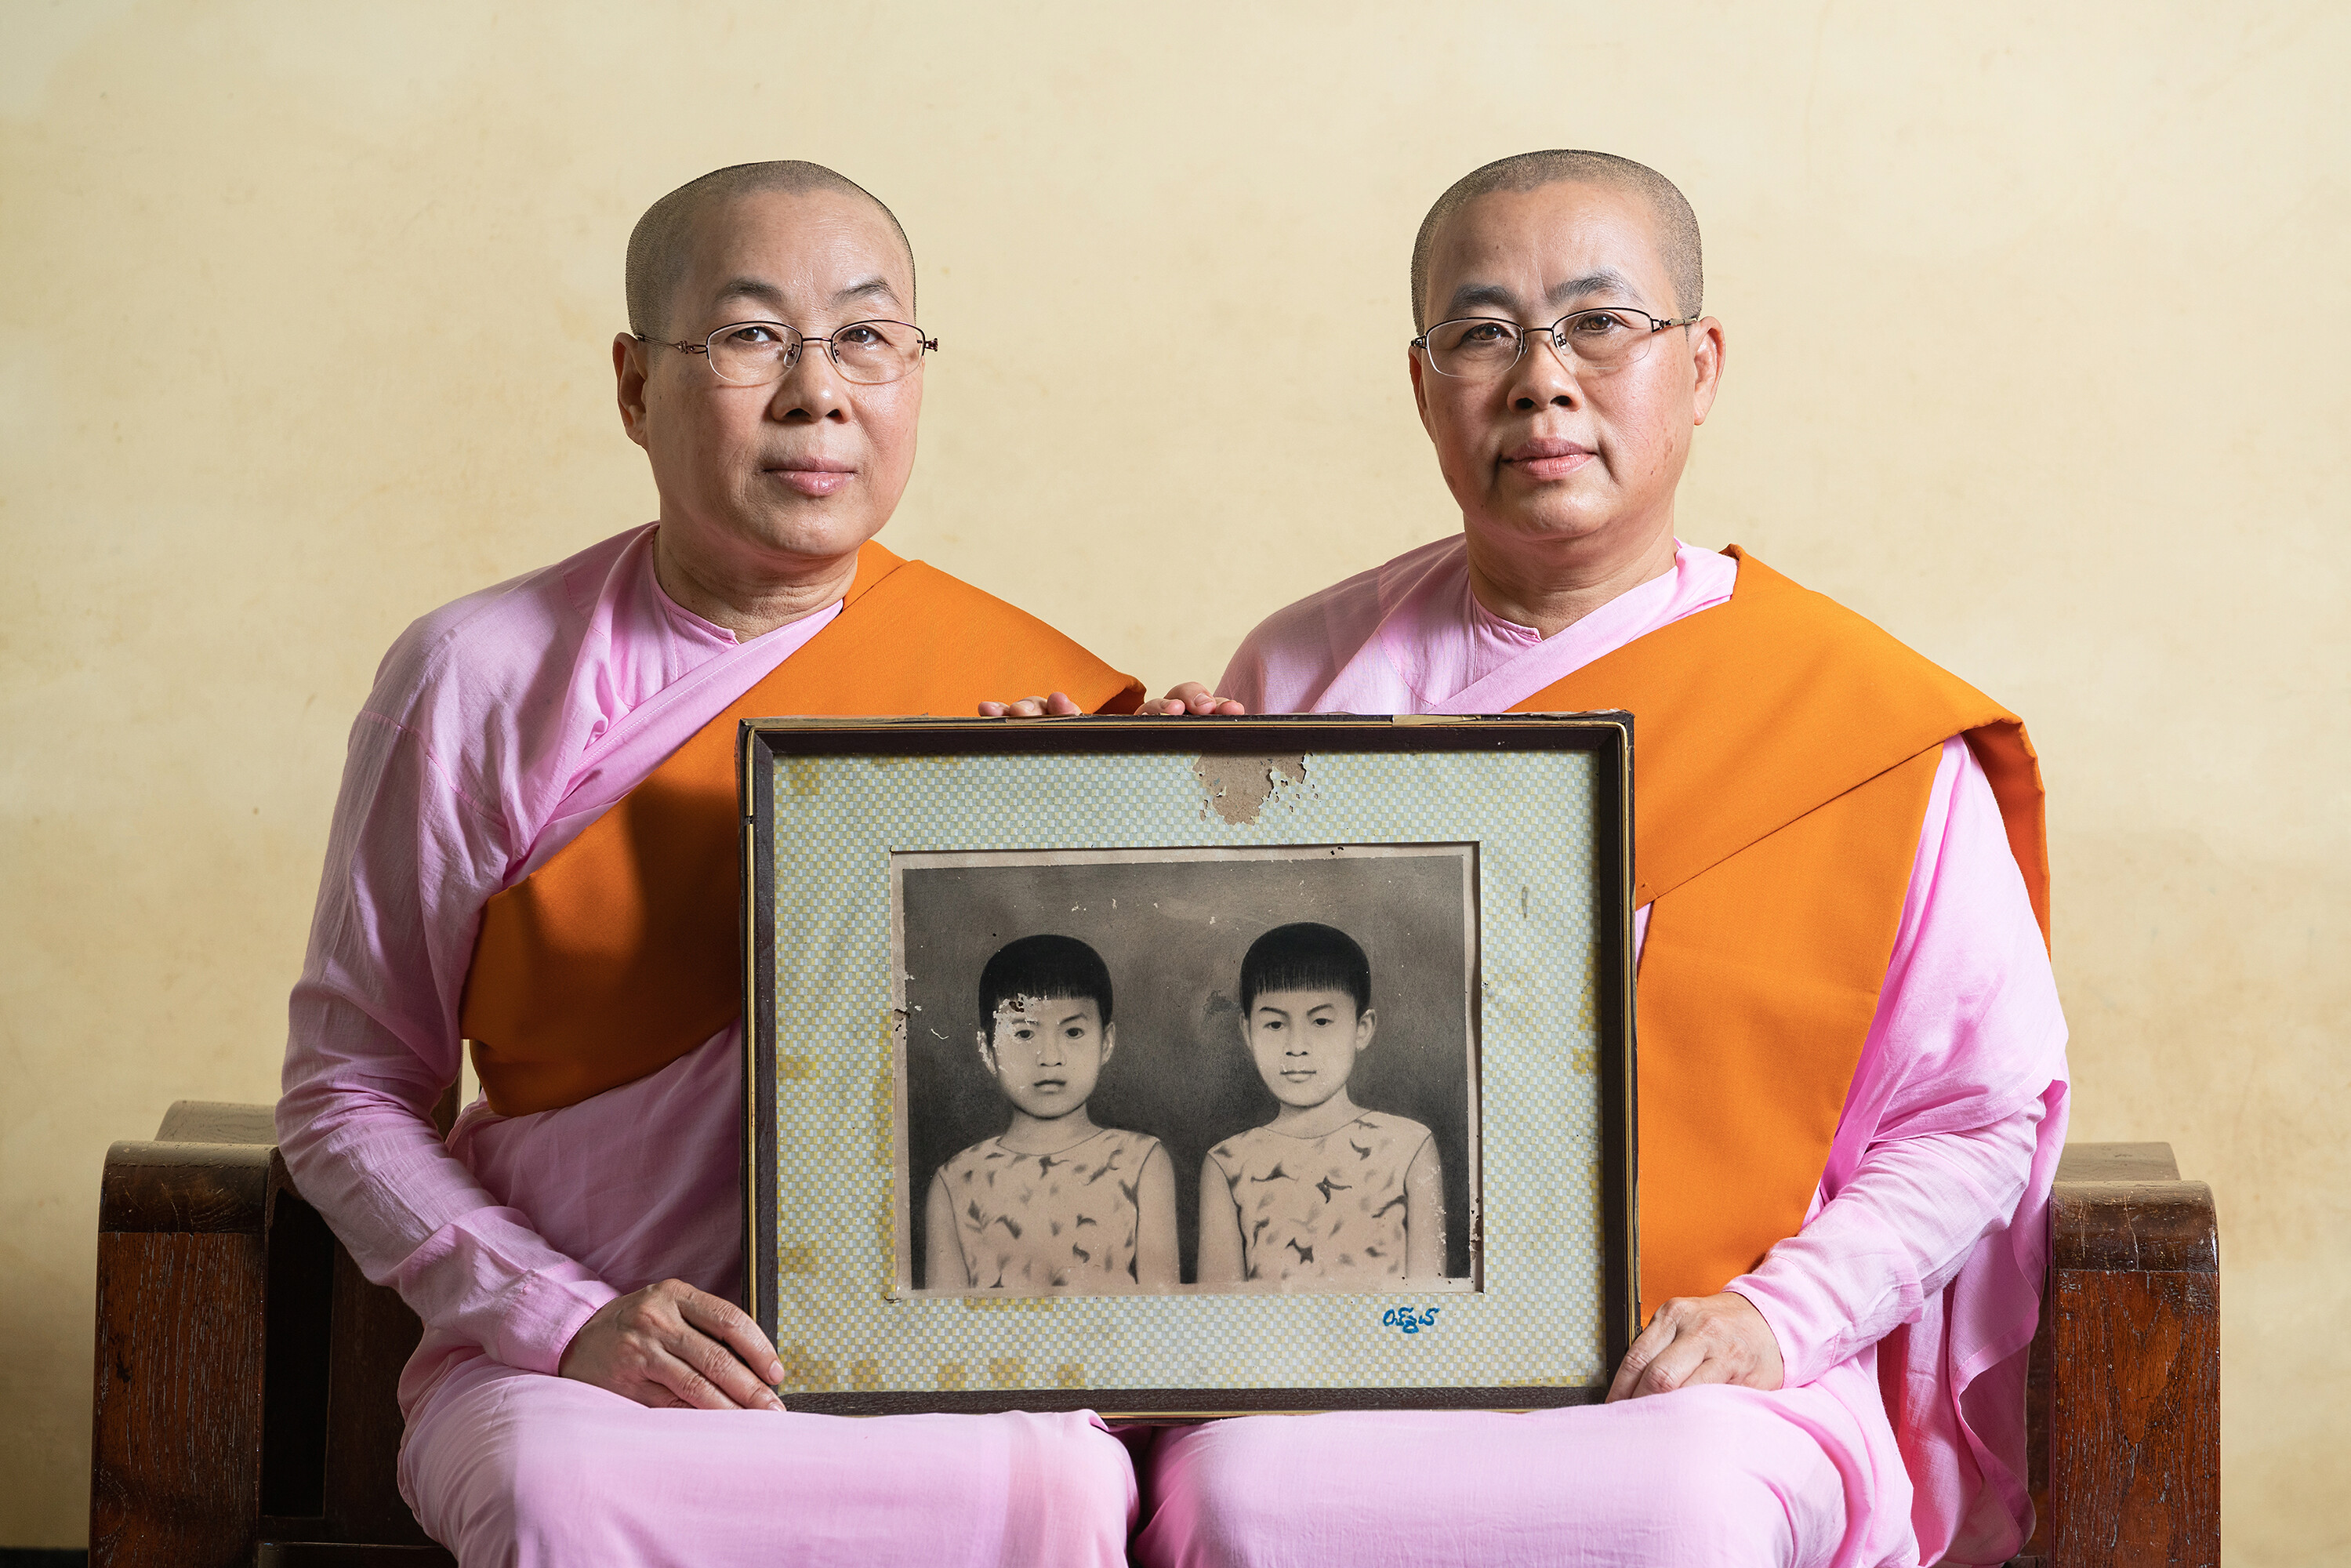 Финалист в категории Люди, 2021. Сёстры-близнецы в буддийском монастыре в Мьянме. Автор Све Тун